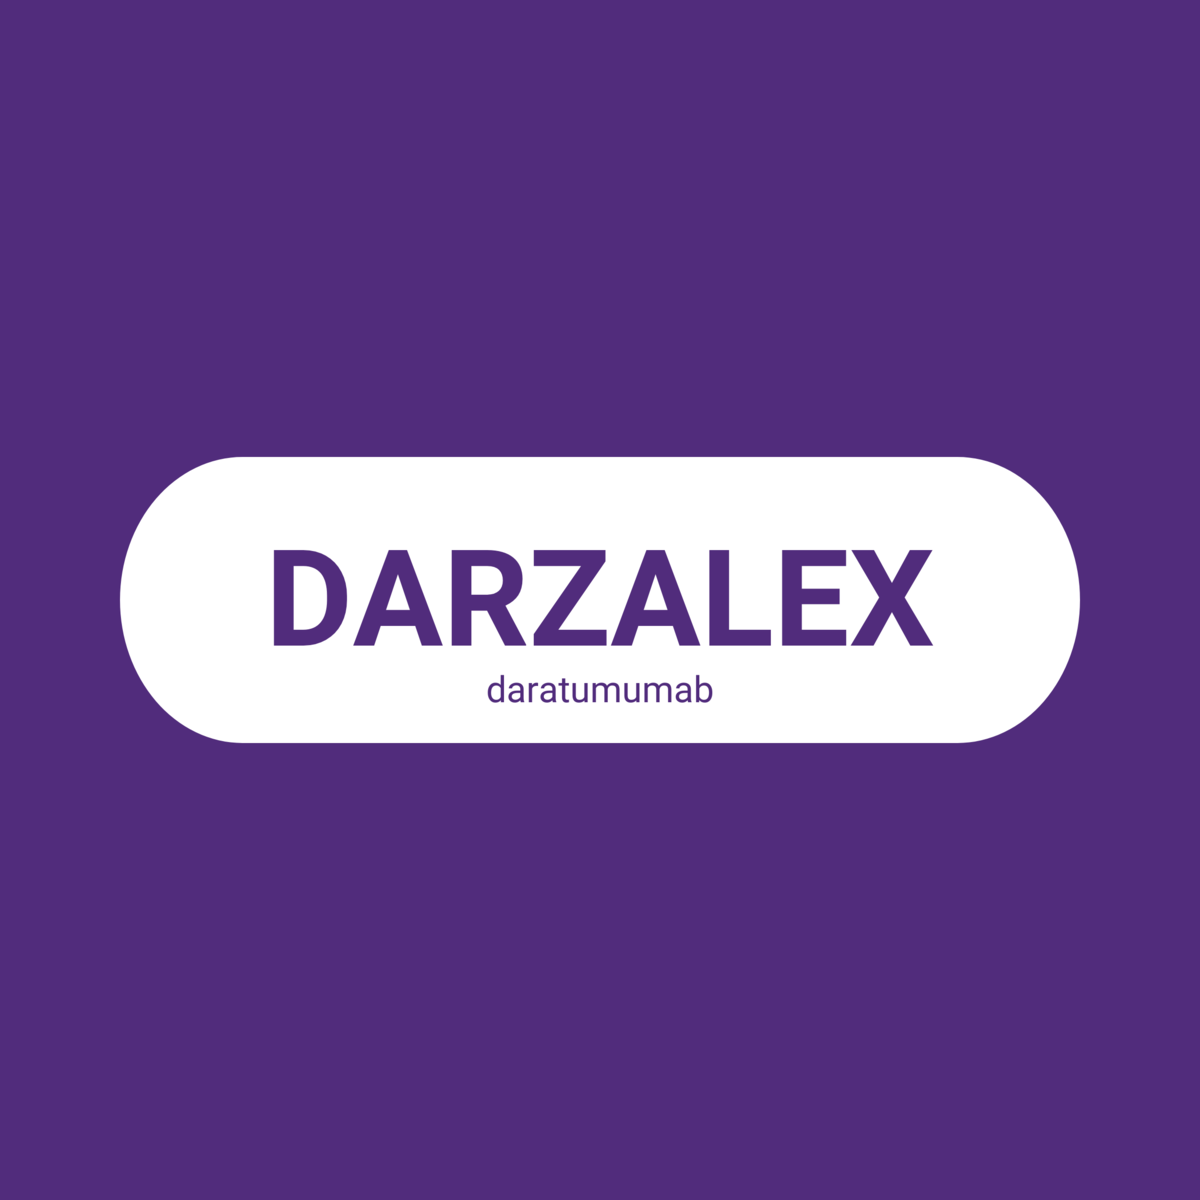 2C: Liečivo daratumumab (Darzalex) v subkutánnom spôsobe podania v monoterapii alebo v kombinácii s bortezomibom a dexametazónom na liečbu pacientov s mnohopočetným myelómom v tretej alebo štvrtej línii